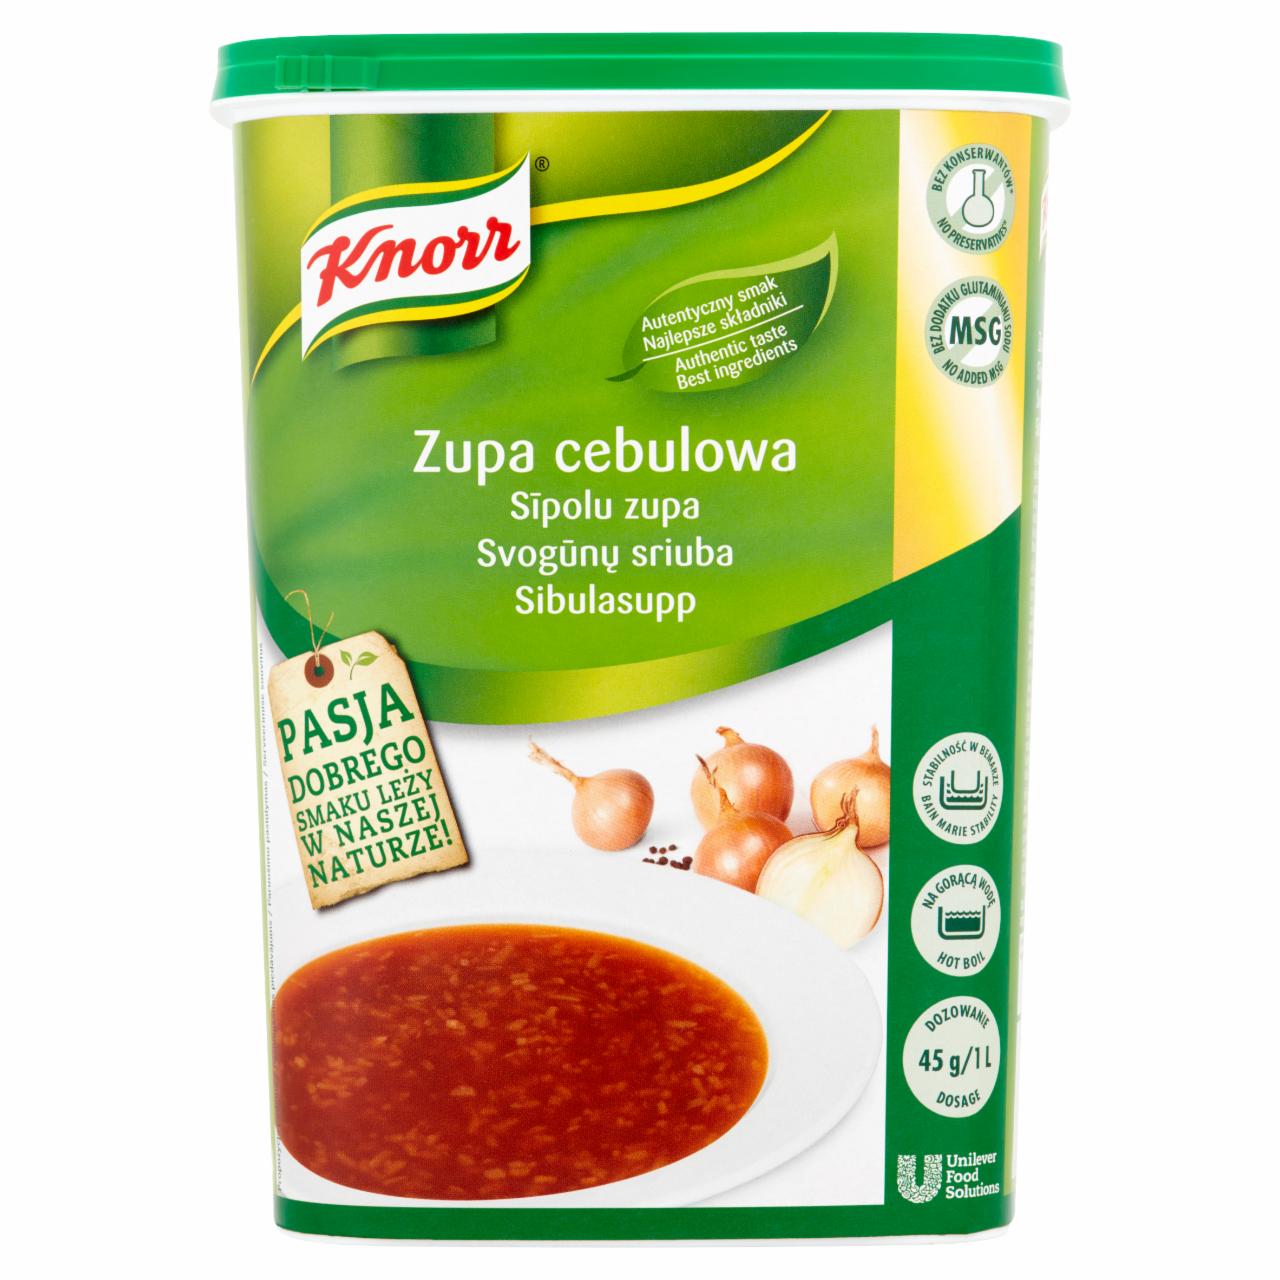 Zdjęcia - Knorr Zupa cebulowa 1 kg